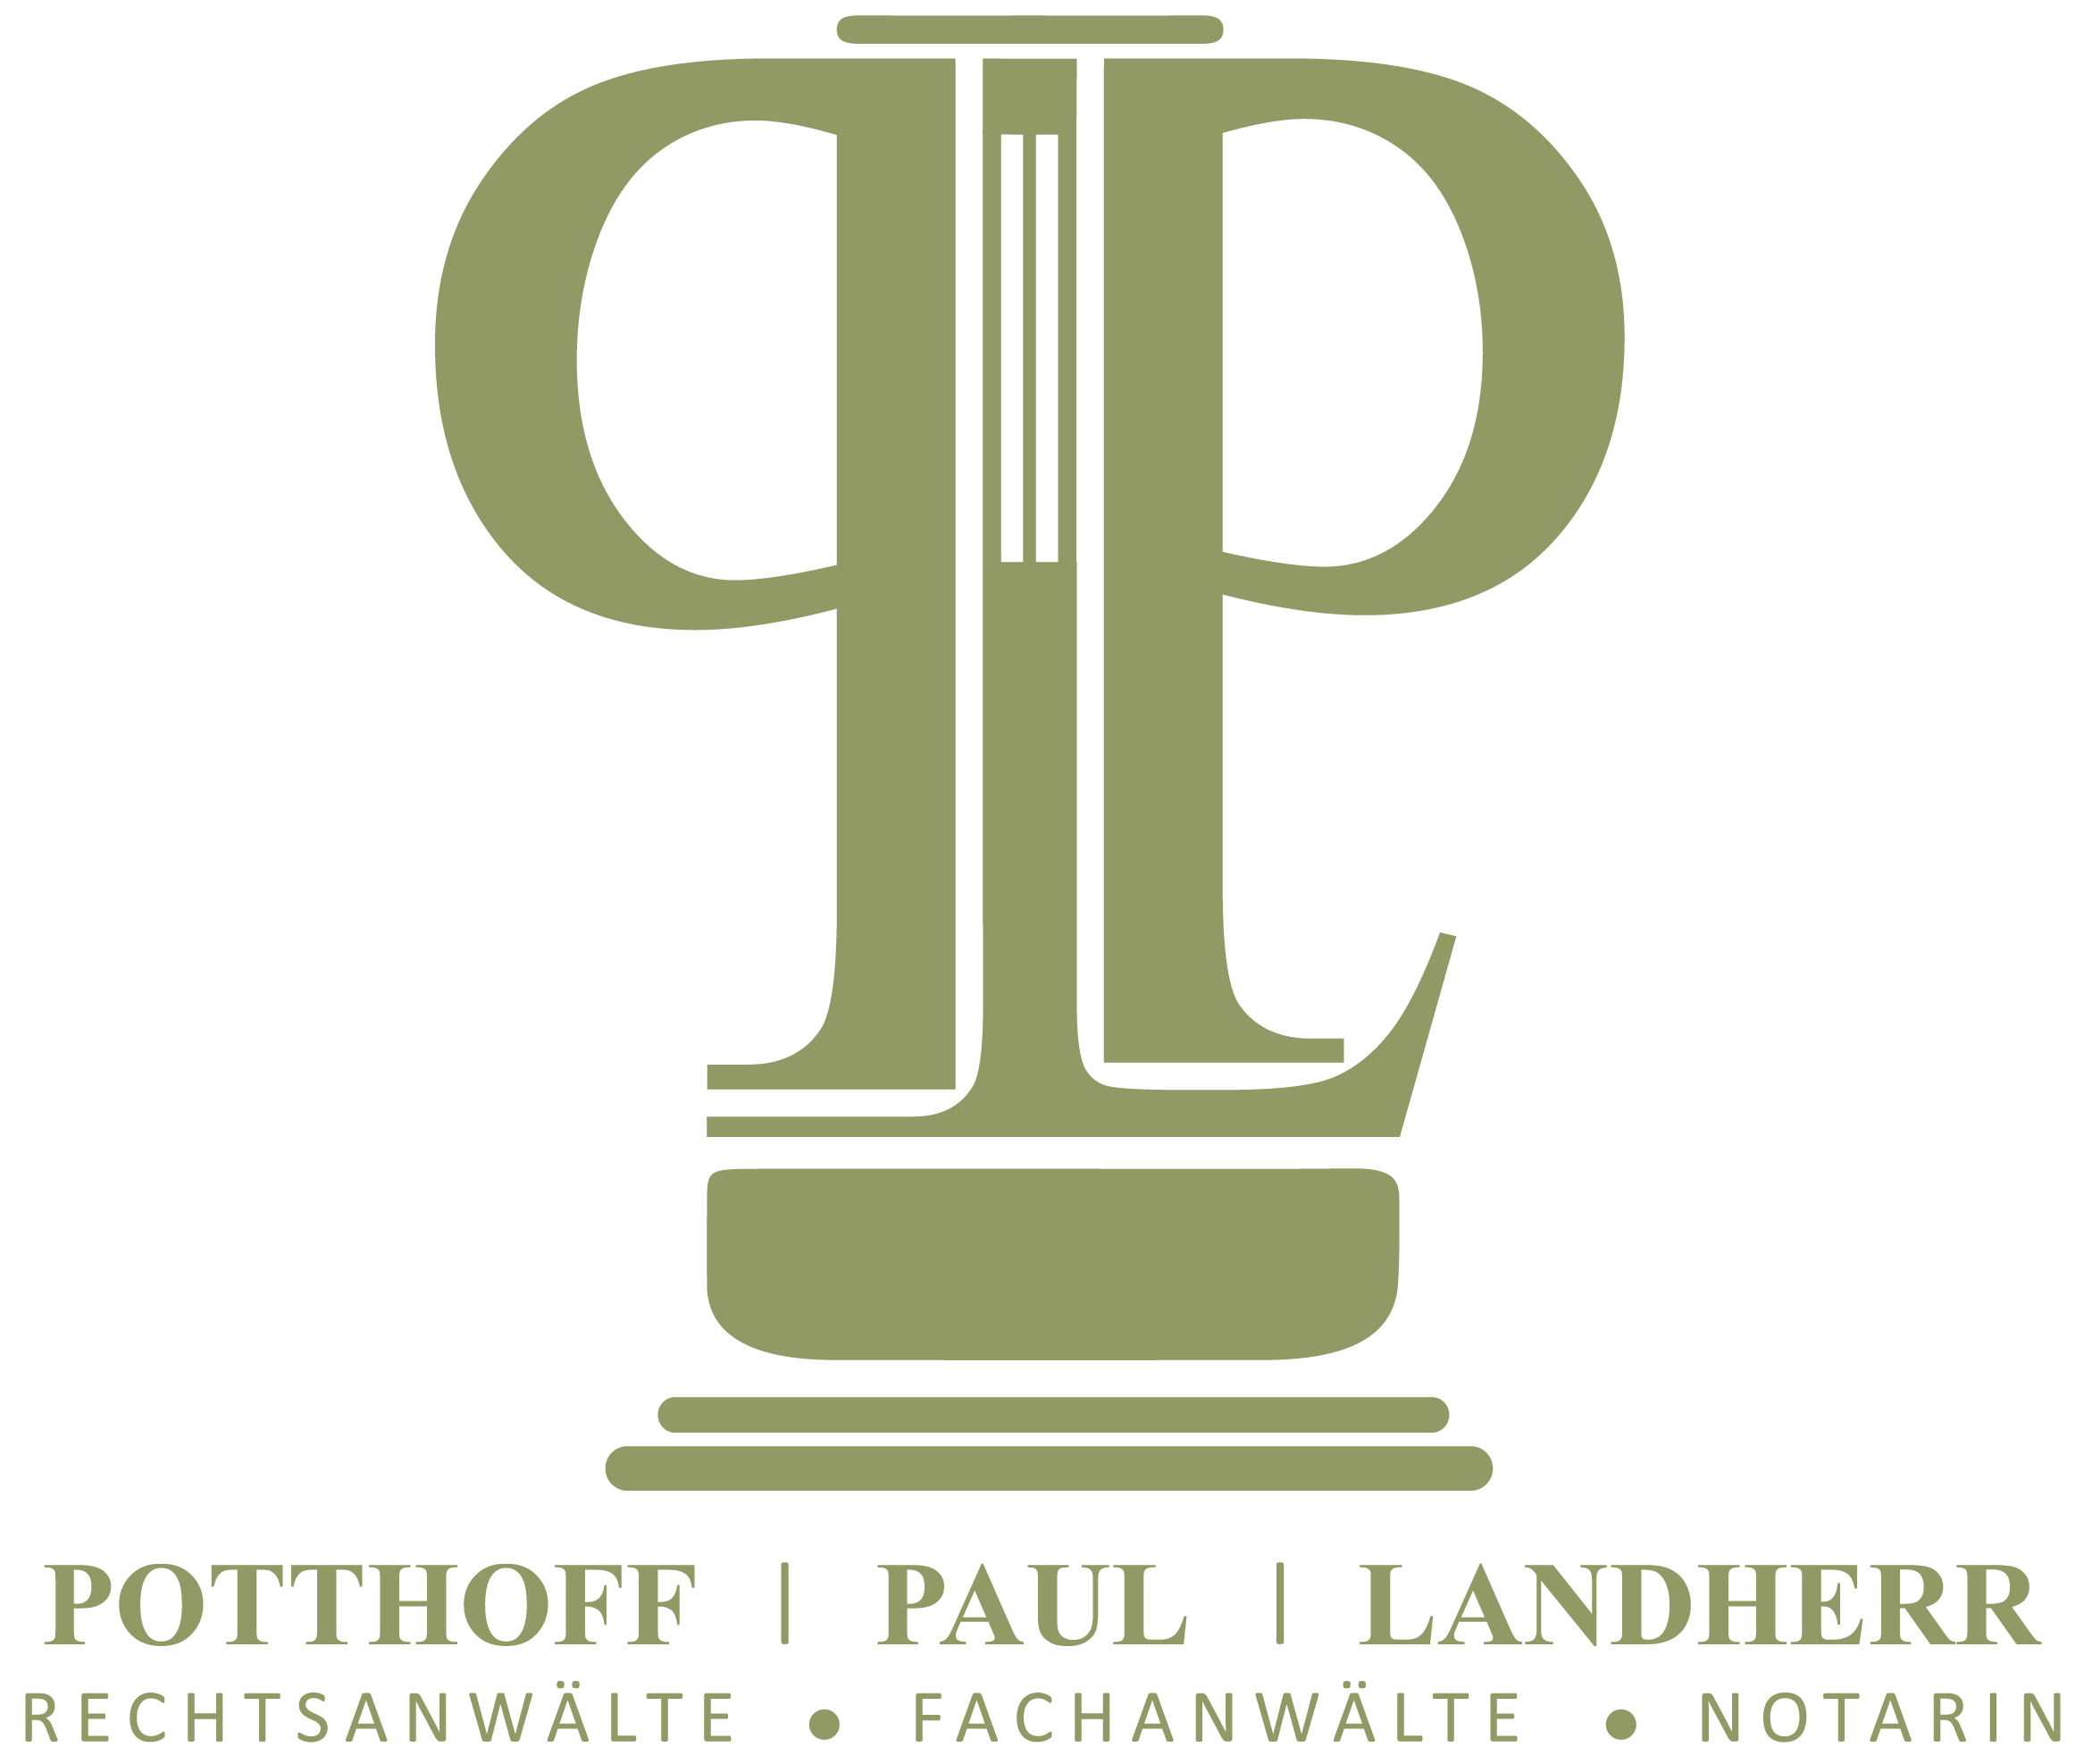 LOGO - Kanzlei Potthoff, Paul, Landherr